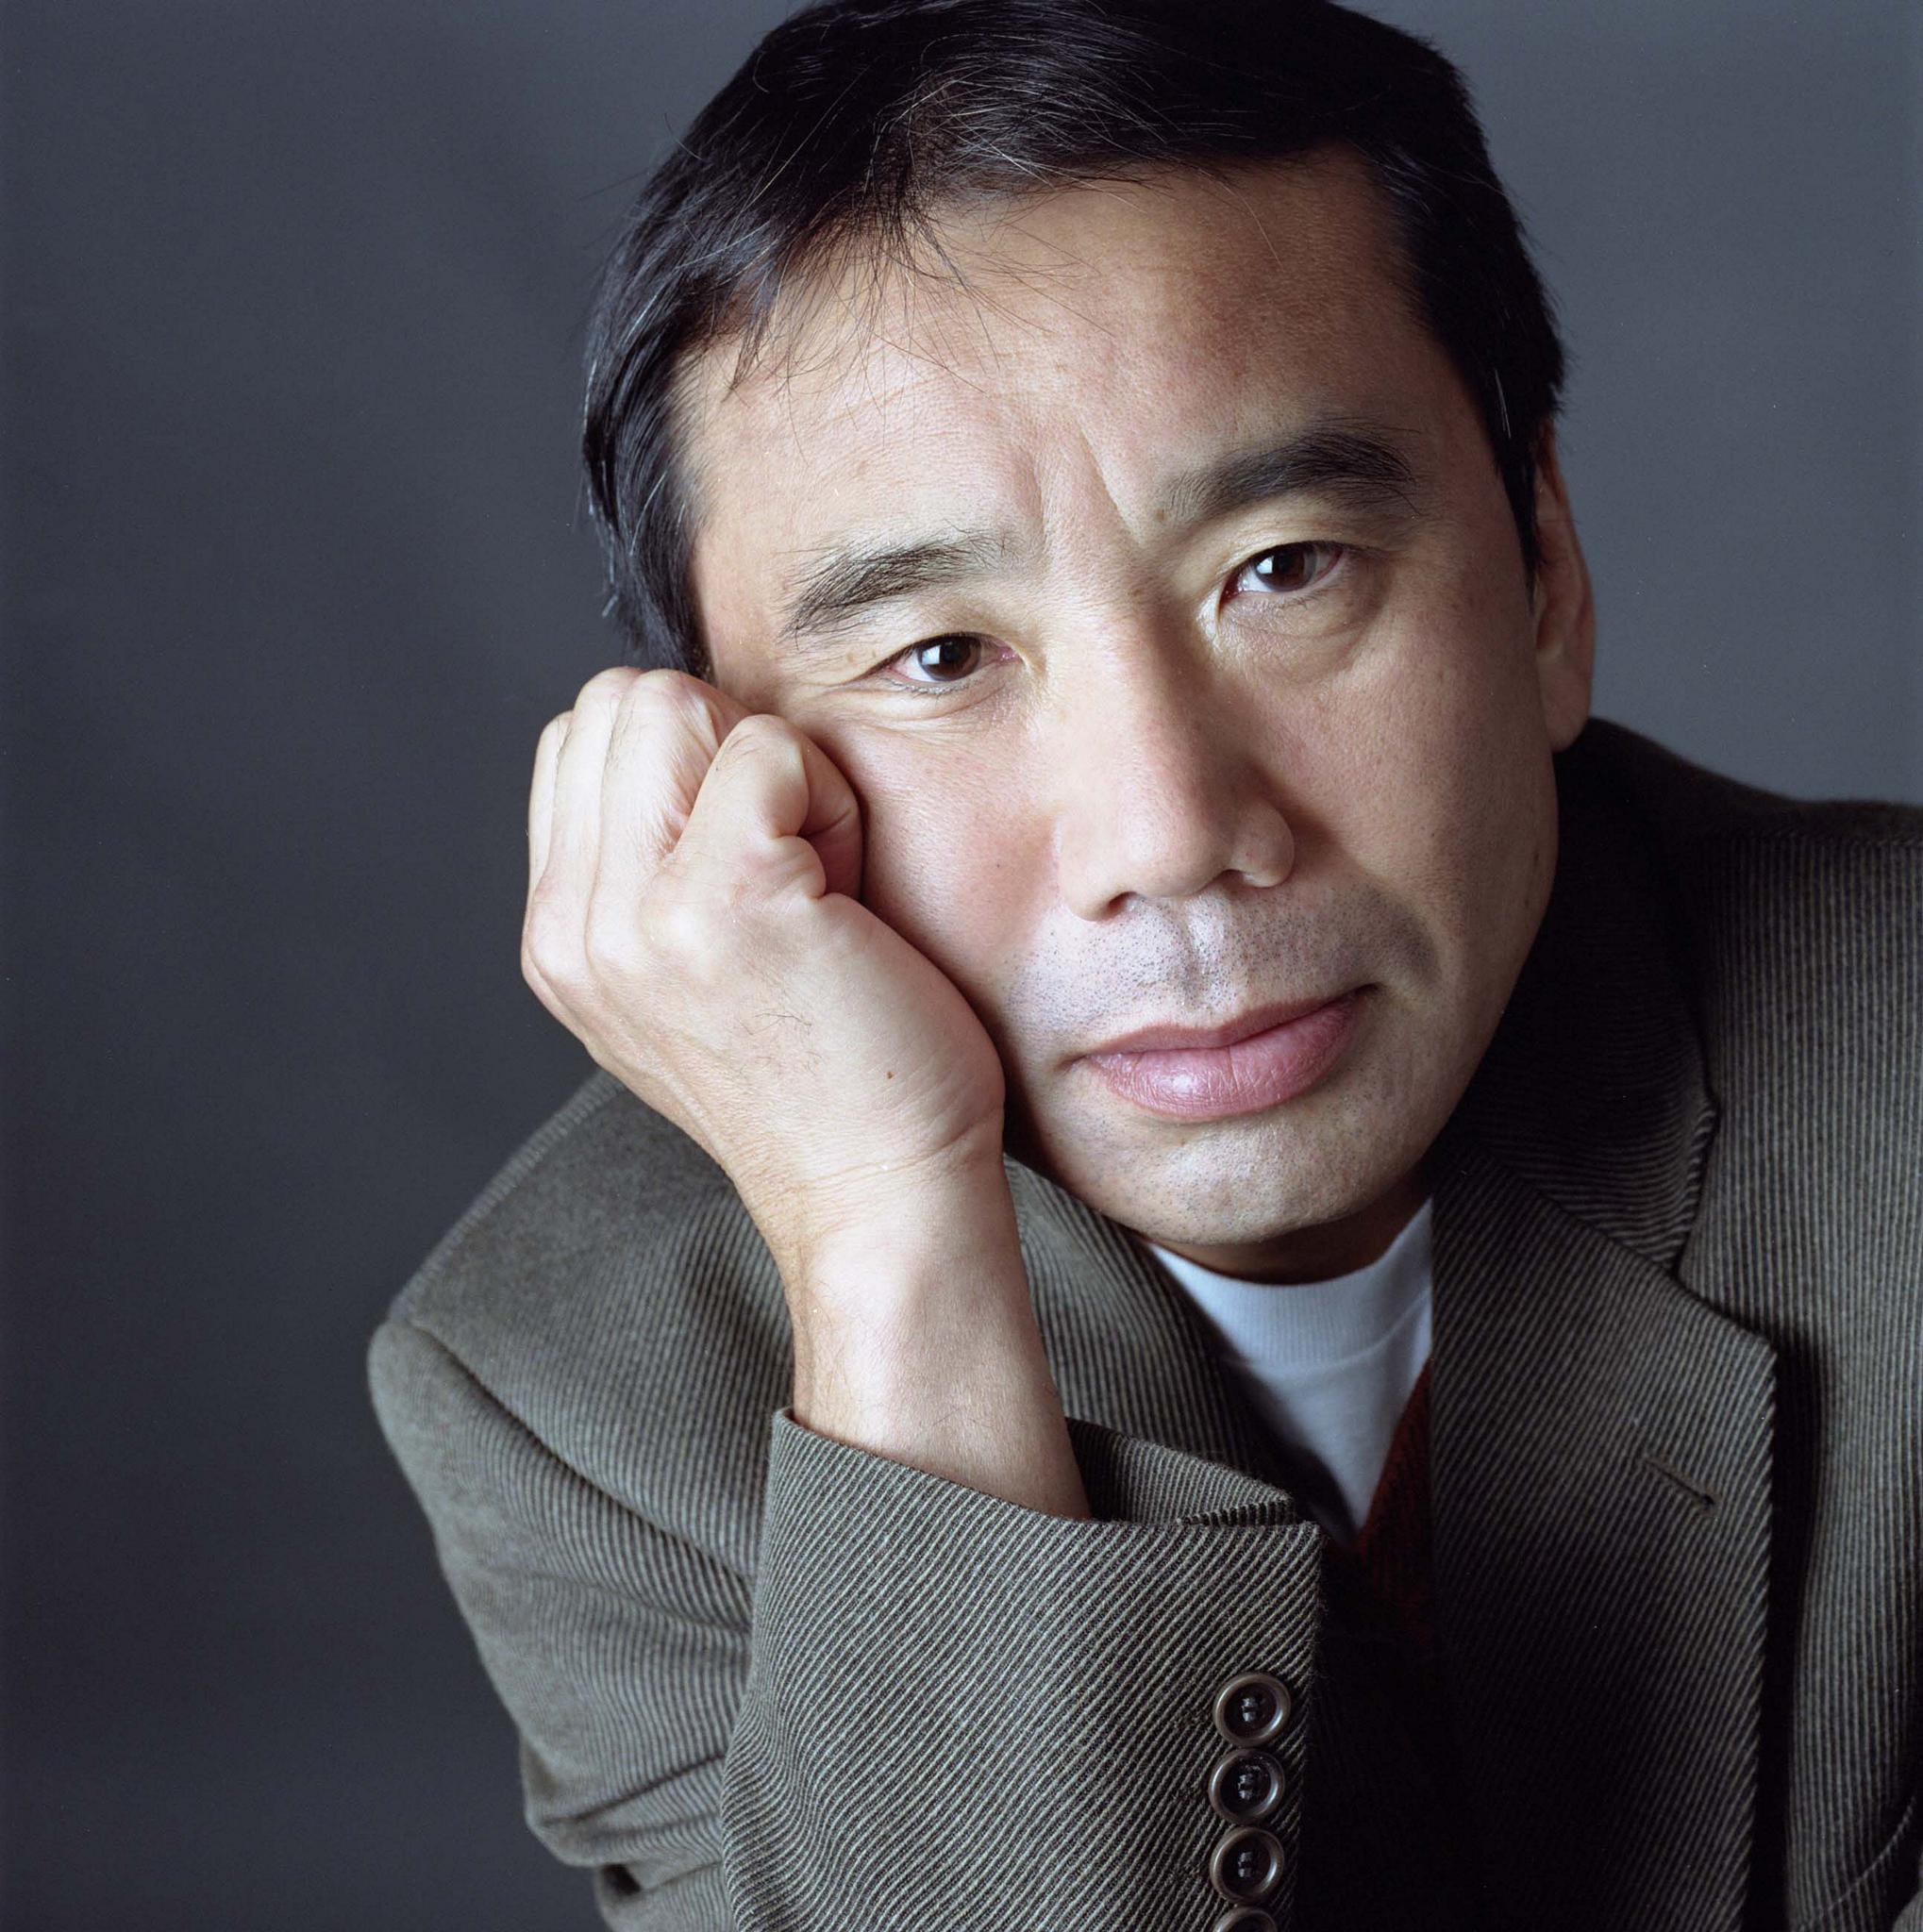 Bounce Railway station lever 5 cărți preferate ale lui Haruki Murakami - Recenzii filme și cărți